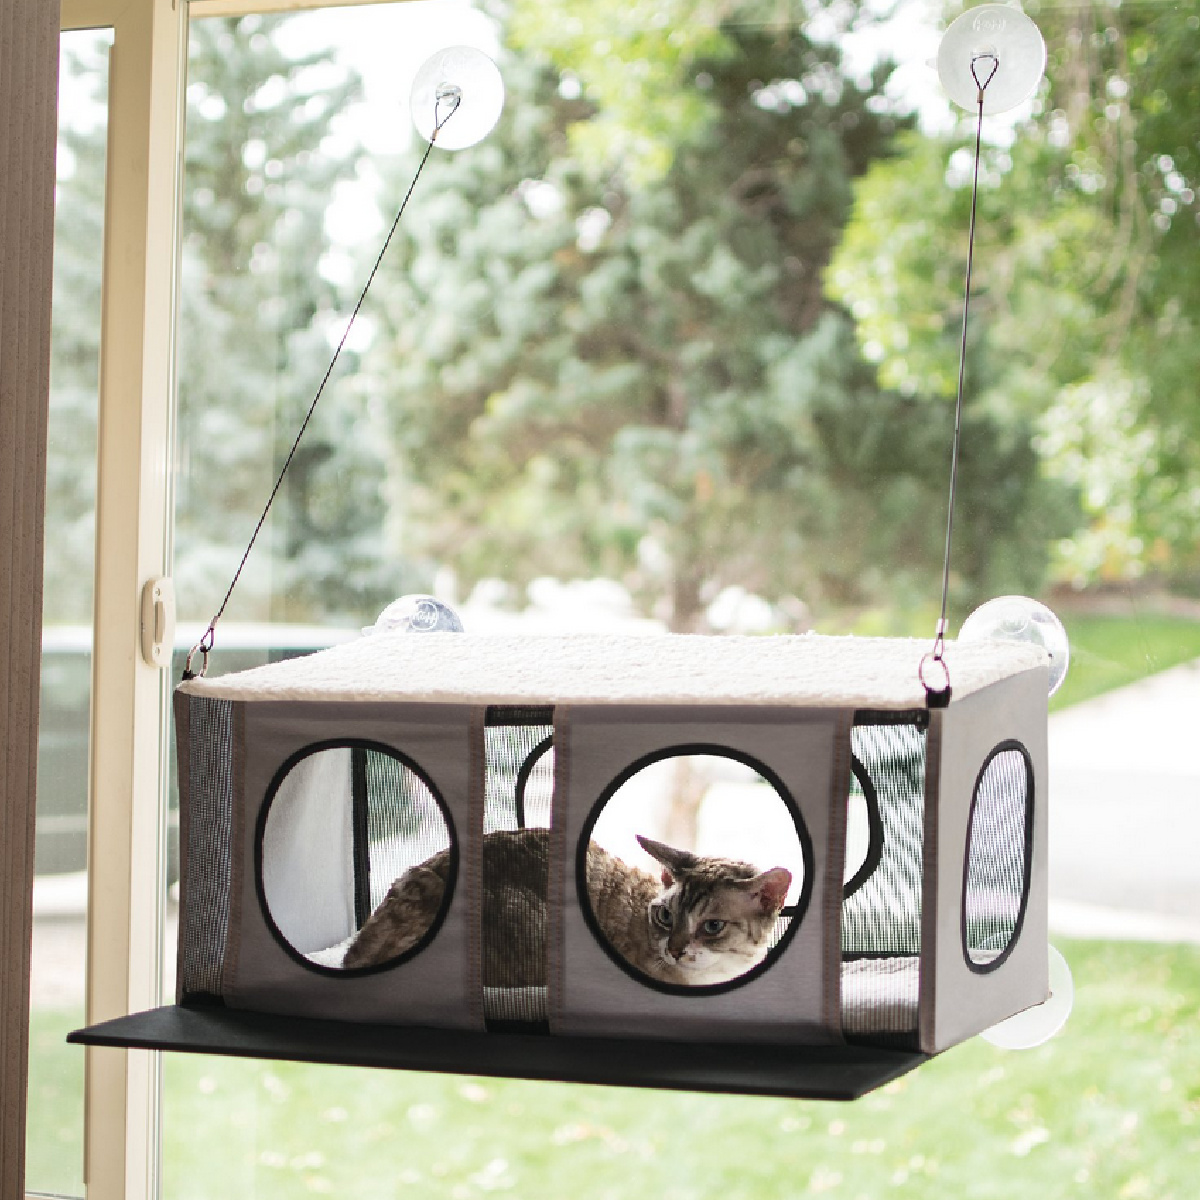 K&H Pet Products EZ Mount Penthouse Cat Window Perch